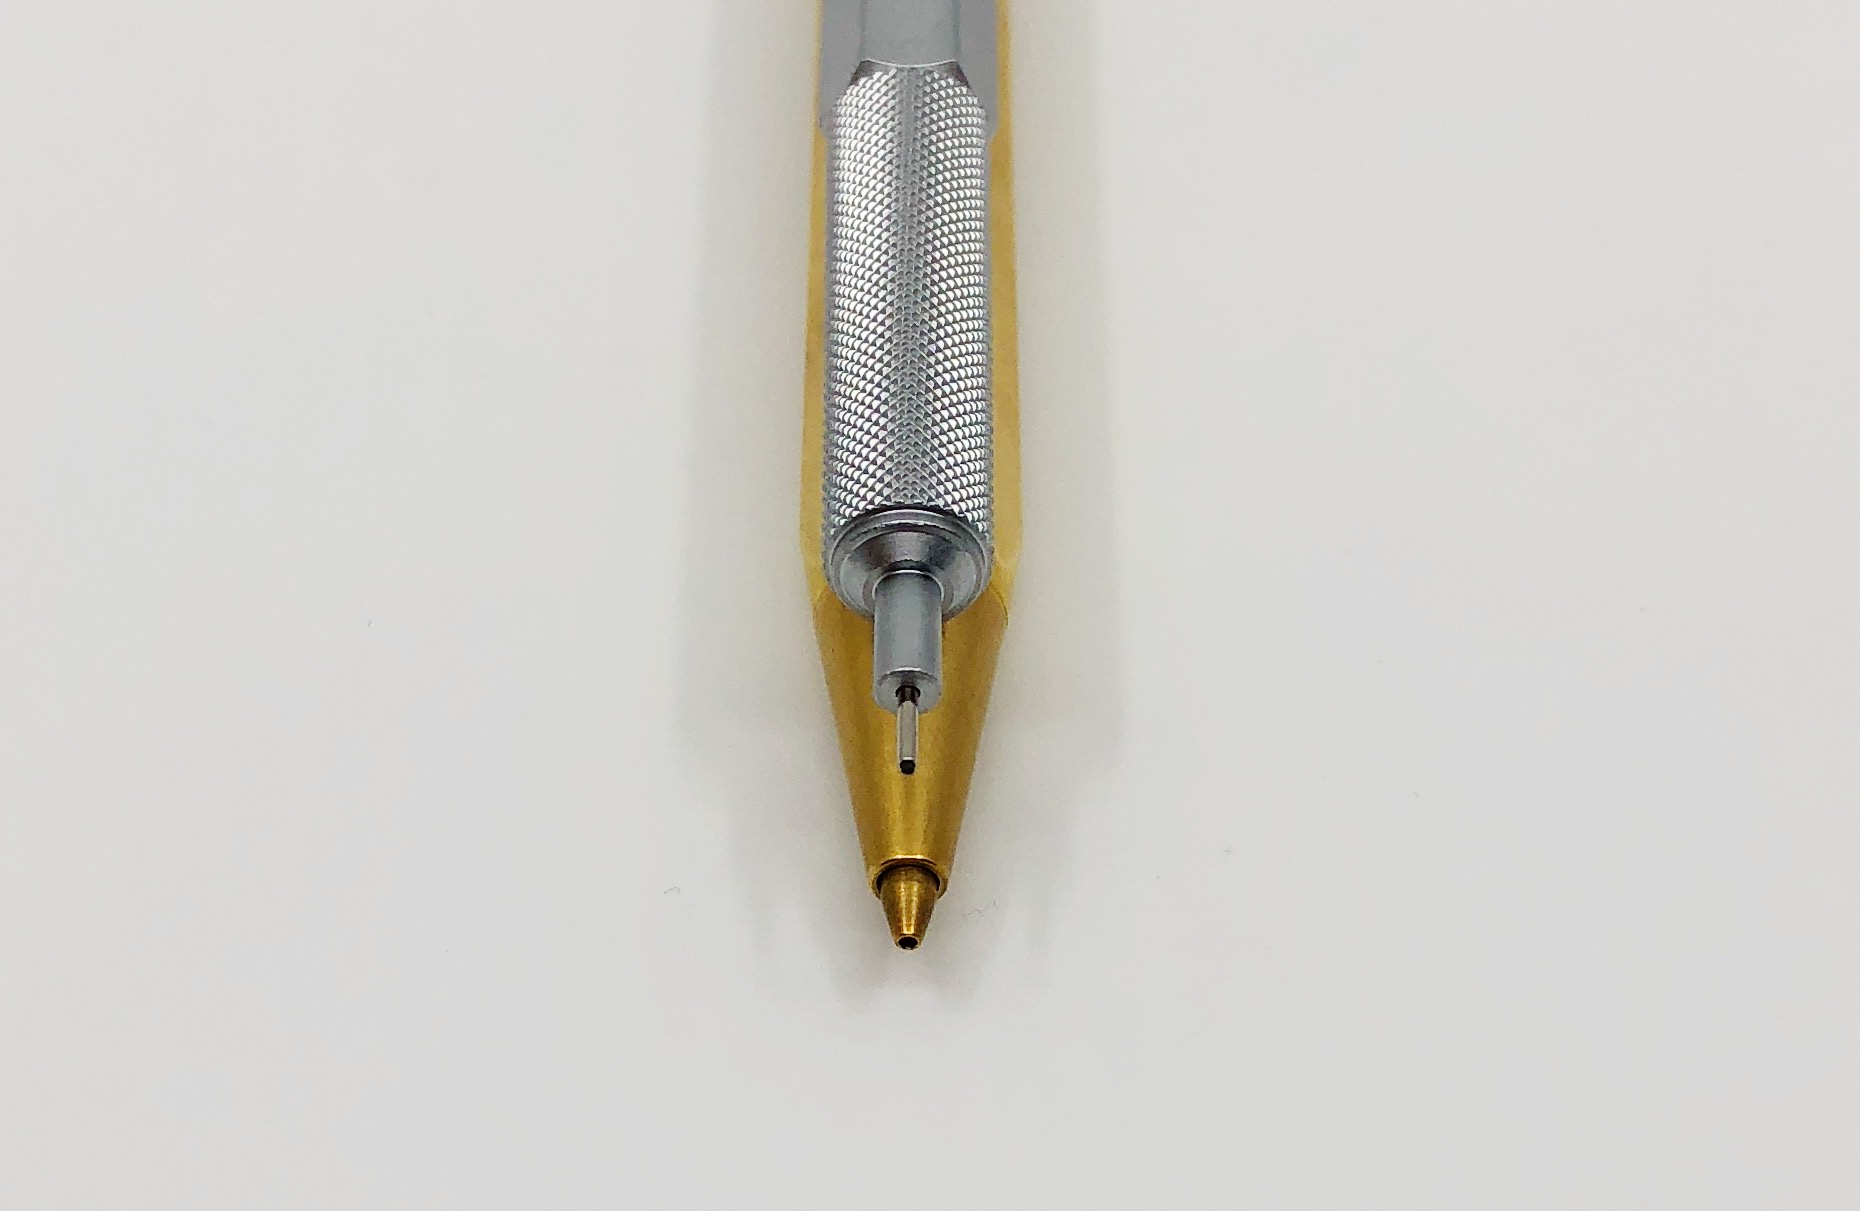 Kutsuwa Dr. Ion Multi Box Pencil Case Review — The Pen Addict